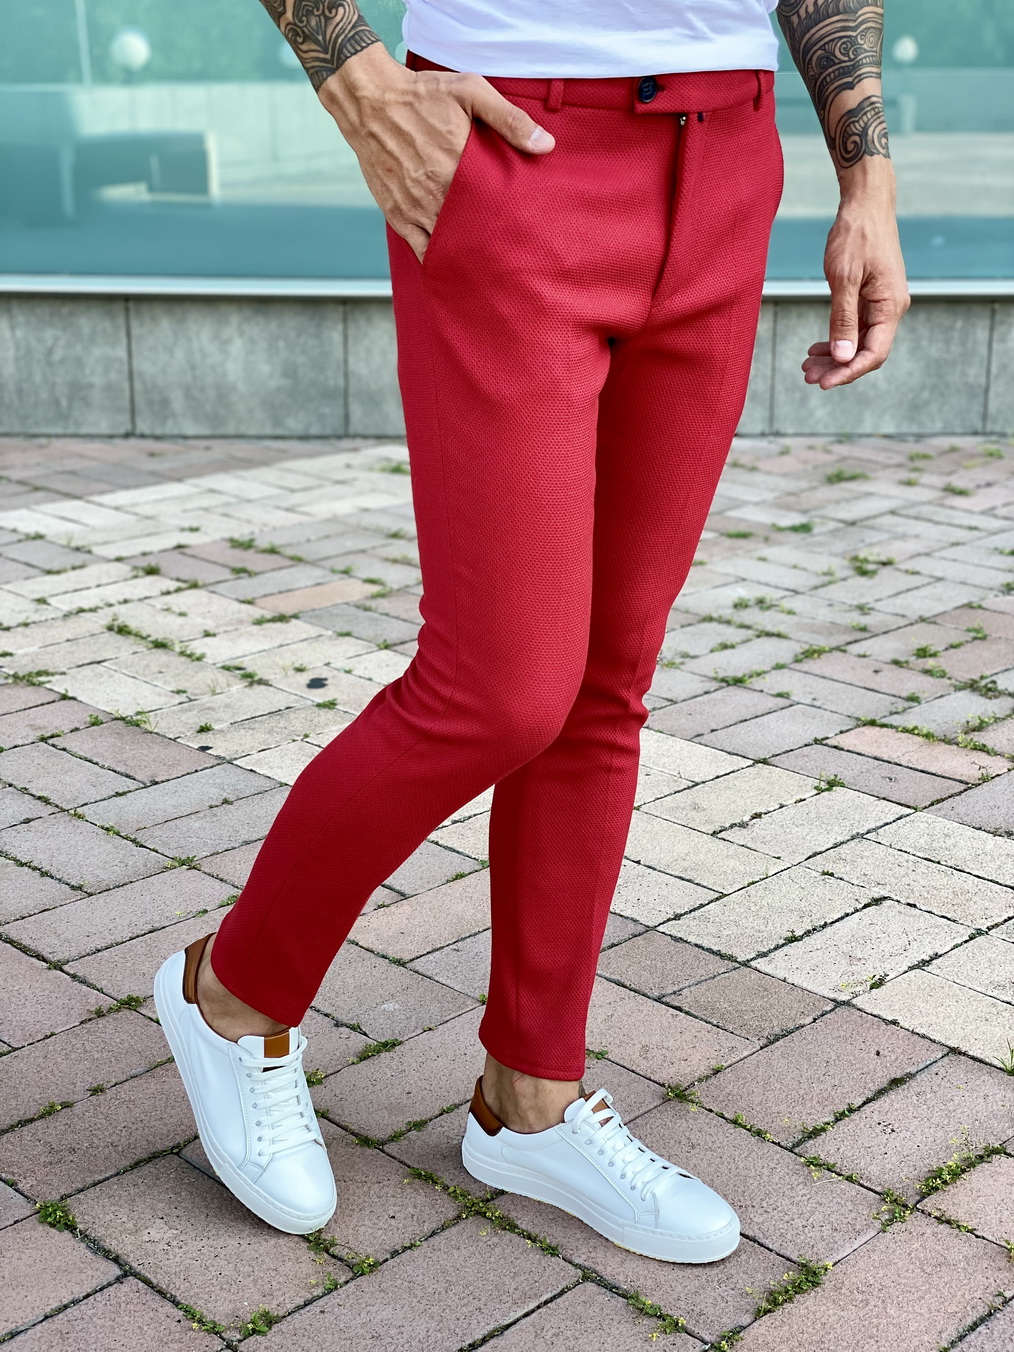 Мужские красные брюки slim fit. Арт.:2401 – купить в магазине мужскойодежды Smartcasuals